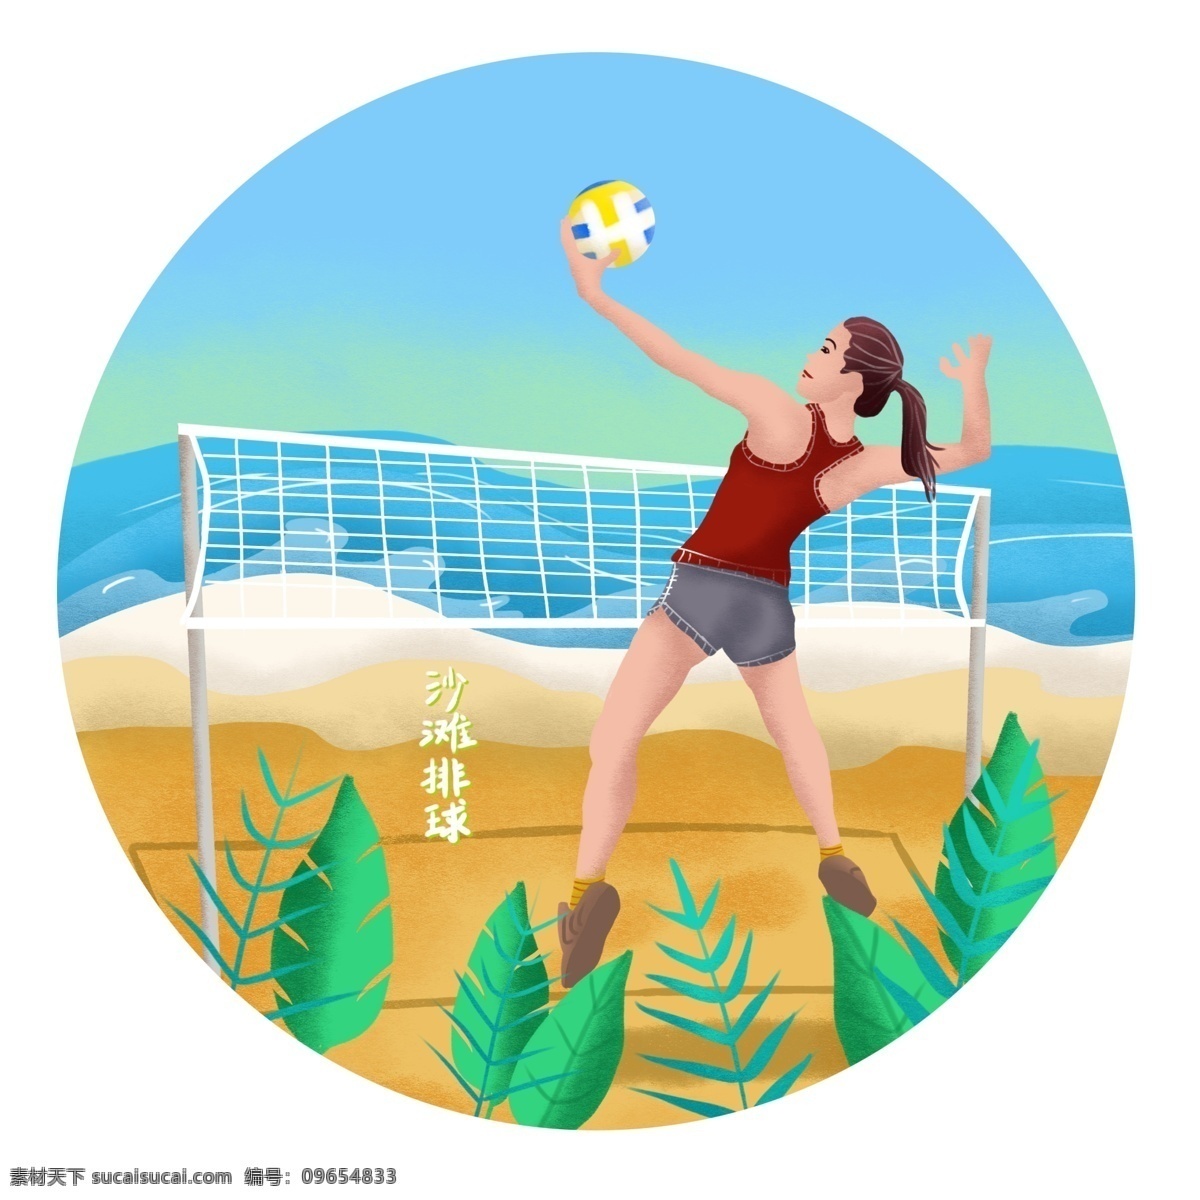 手绘 体育 日 正在 沙滩排球 年轻 女子 手绘风 体育日 沙滩 海水 海浪 植物 网 排球 女人 人物 运动 元素 可商用